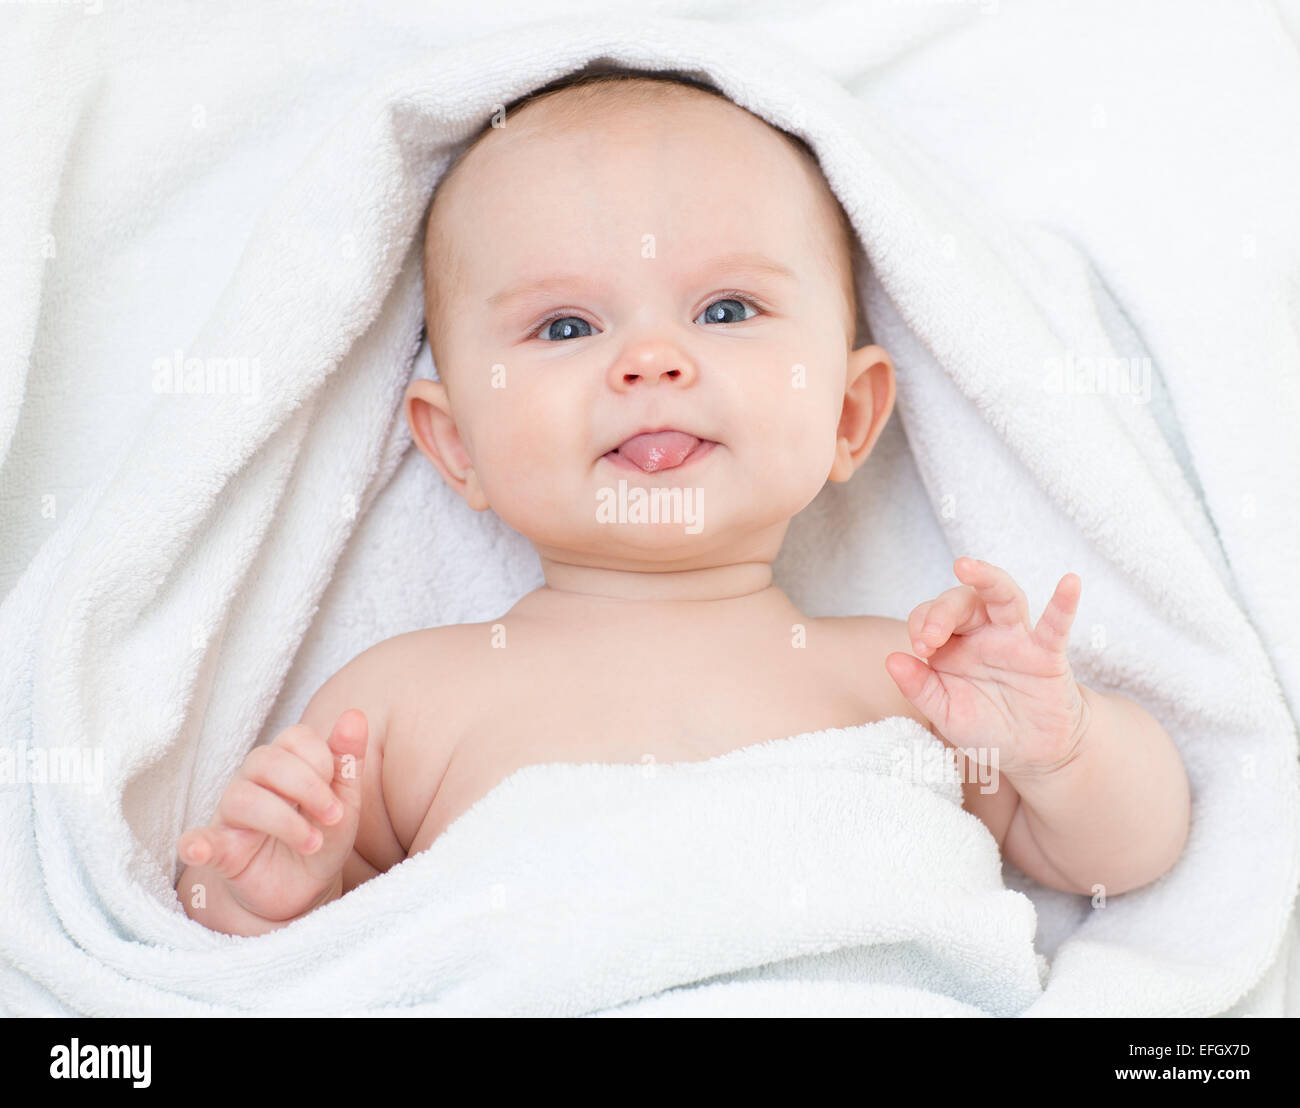 Lindo gracioso bebé en una toalla de baño mostrando lengua Foto de stock